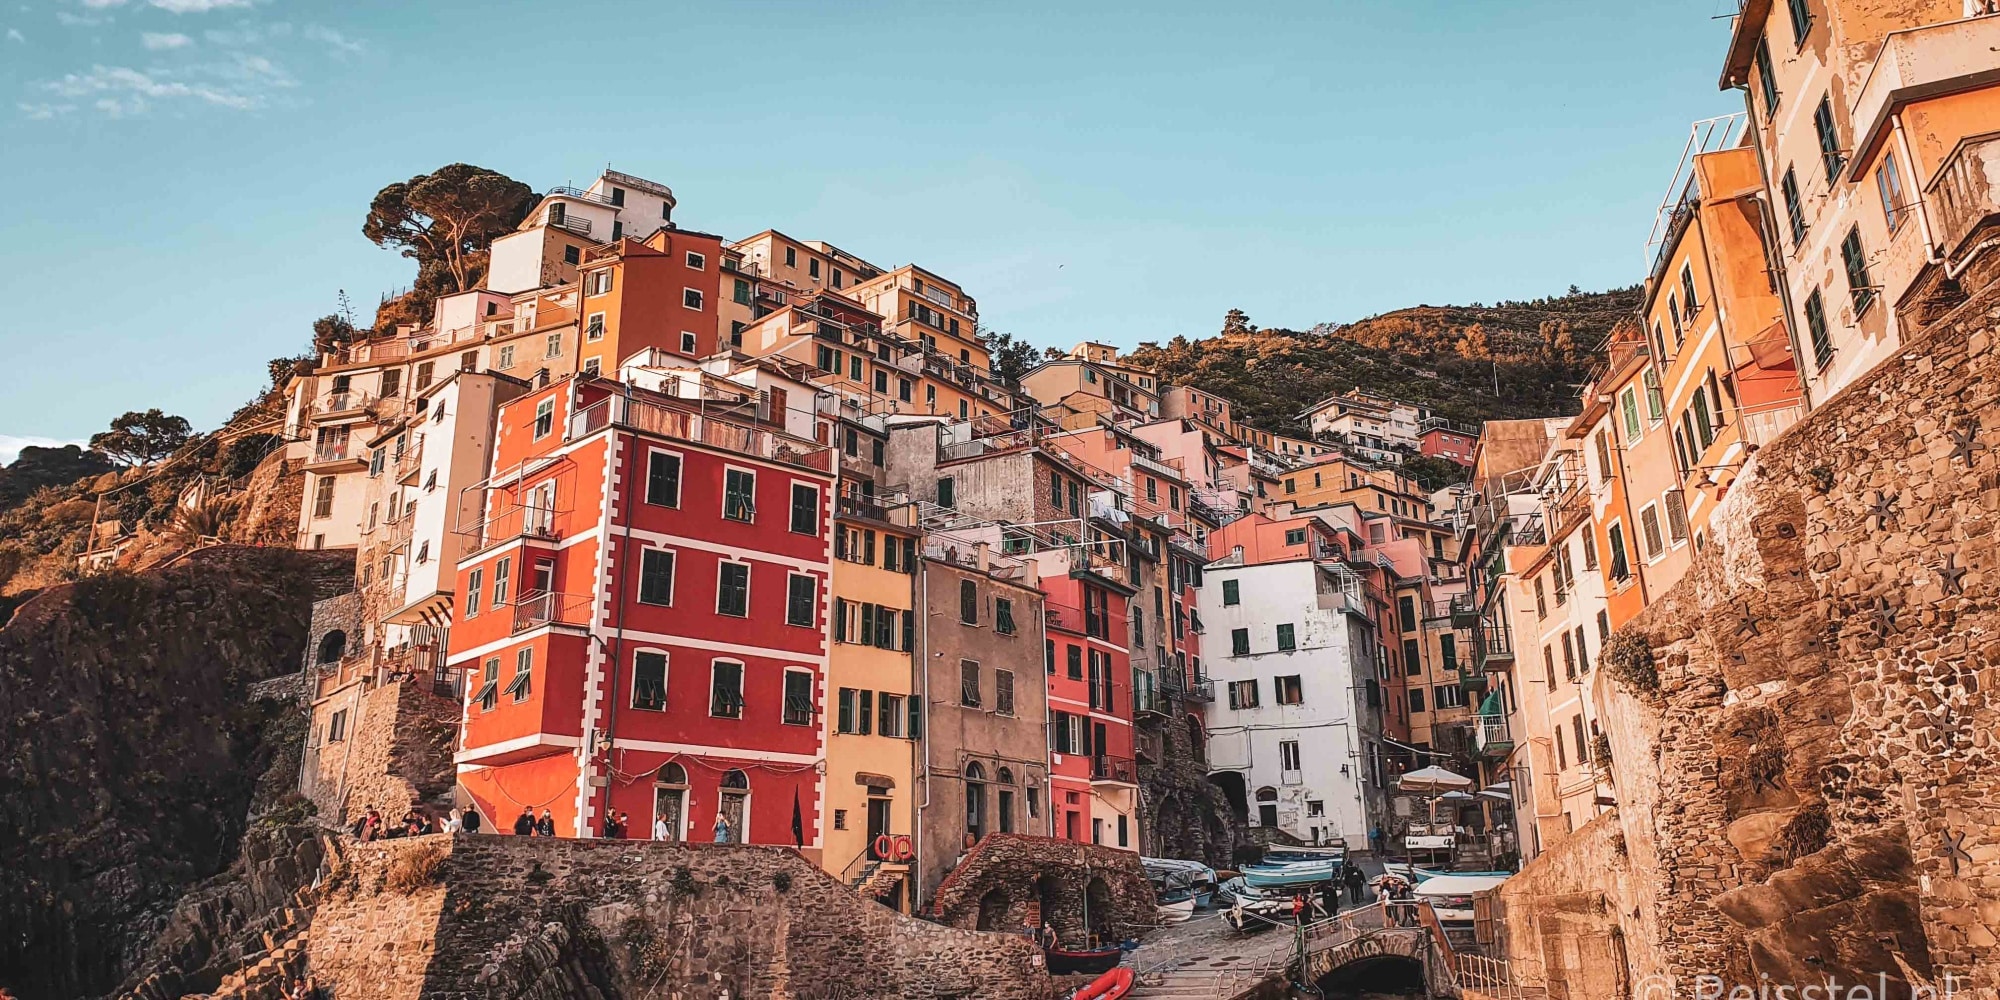 Co musíte v Itálii udělat: túra Cinque Terre | 2denní výlet | záhlaví